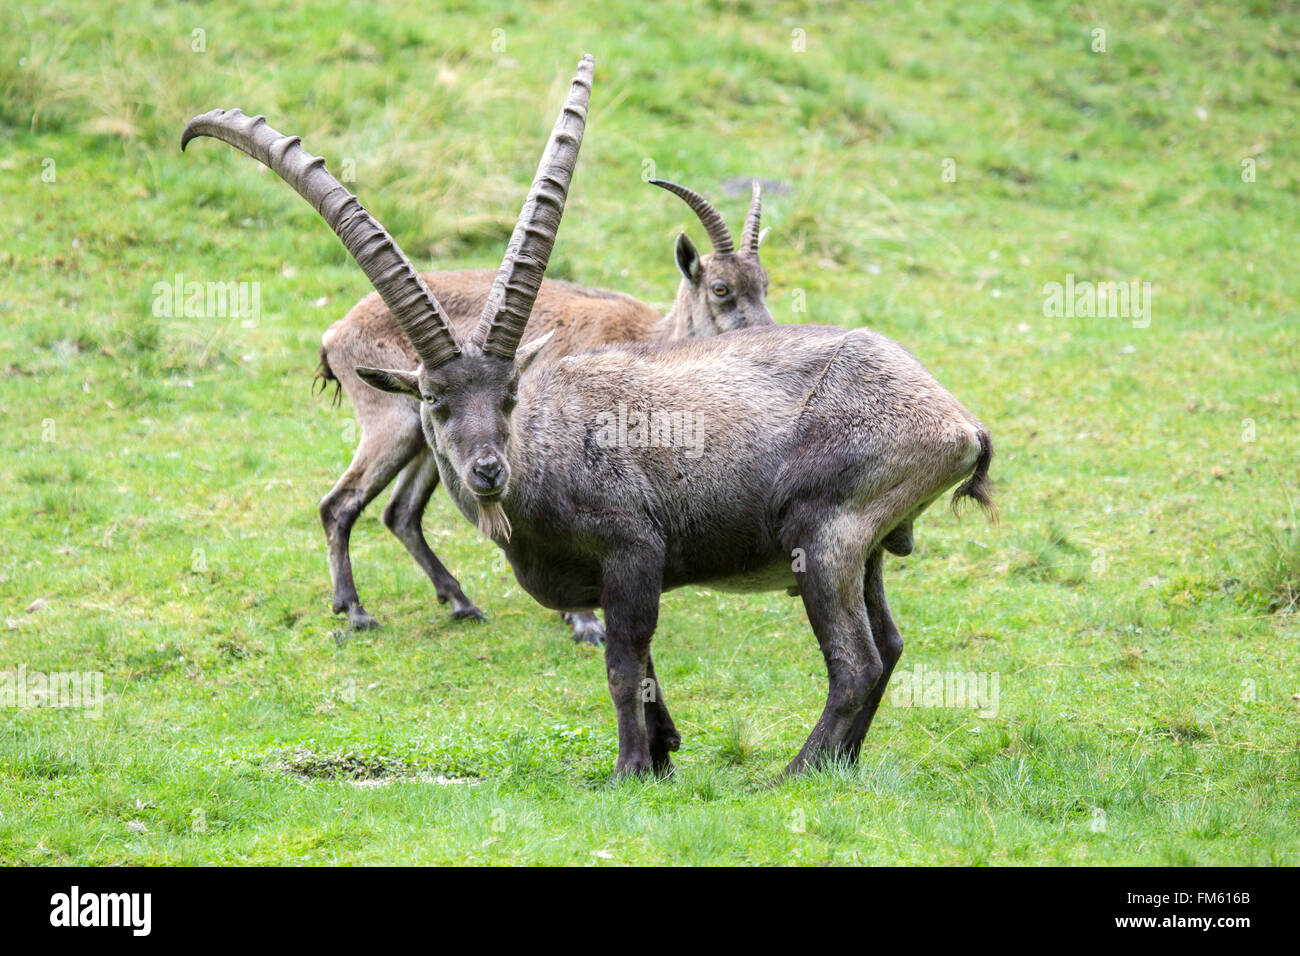 Maschio di stambecco, Capra ibex, in una radura con una femmina di dietro. Questa è una sessualmente dimorphic specie con i maschi più grandi che portano Foto Stock